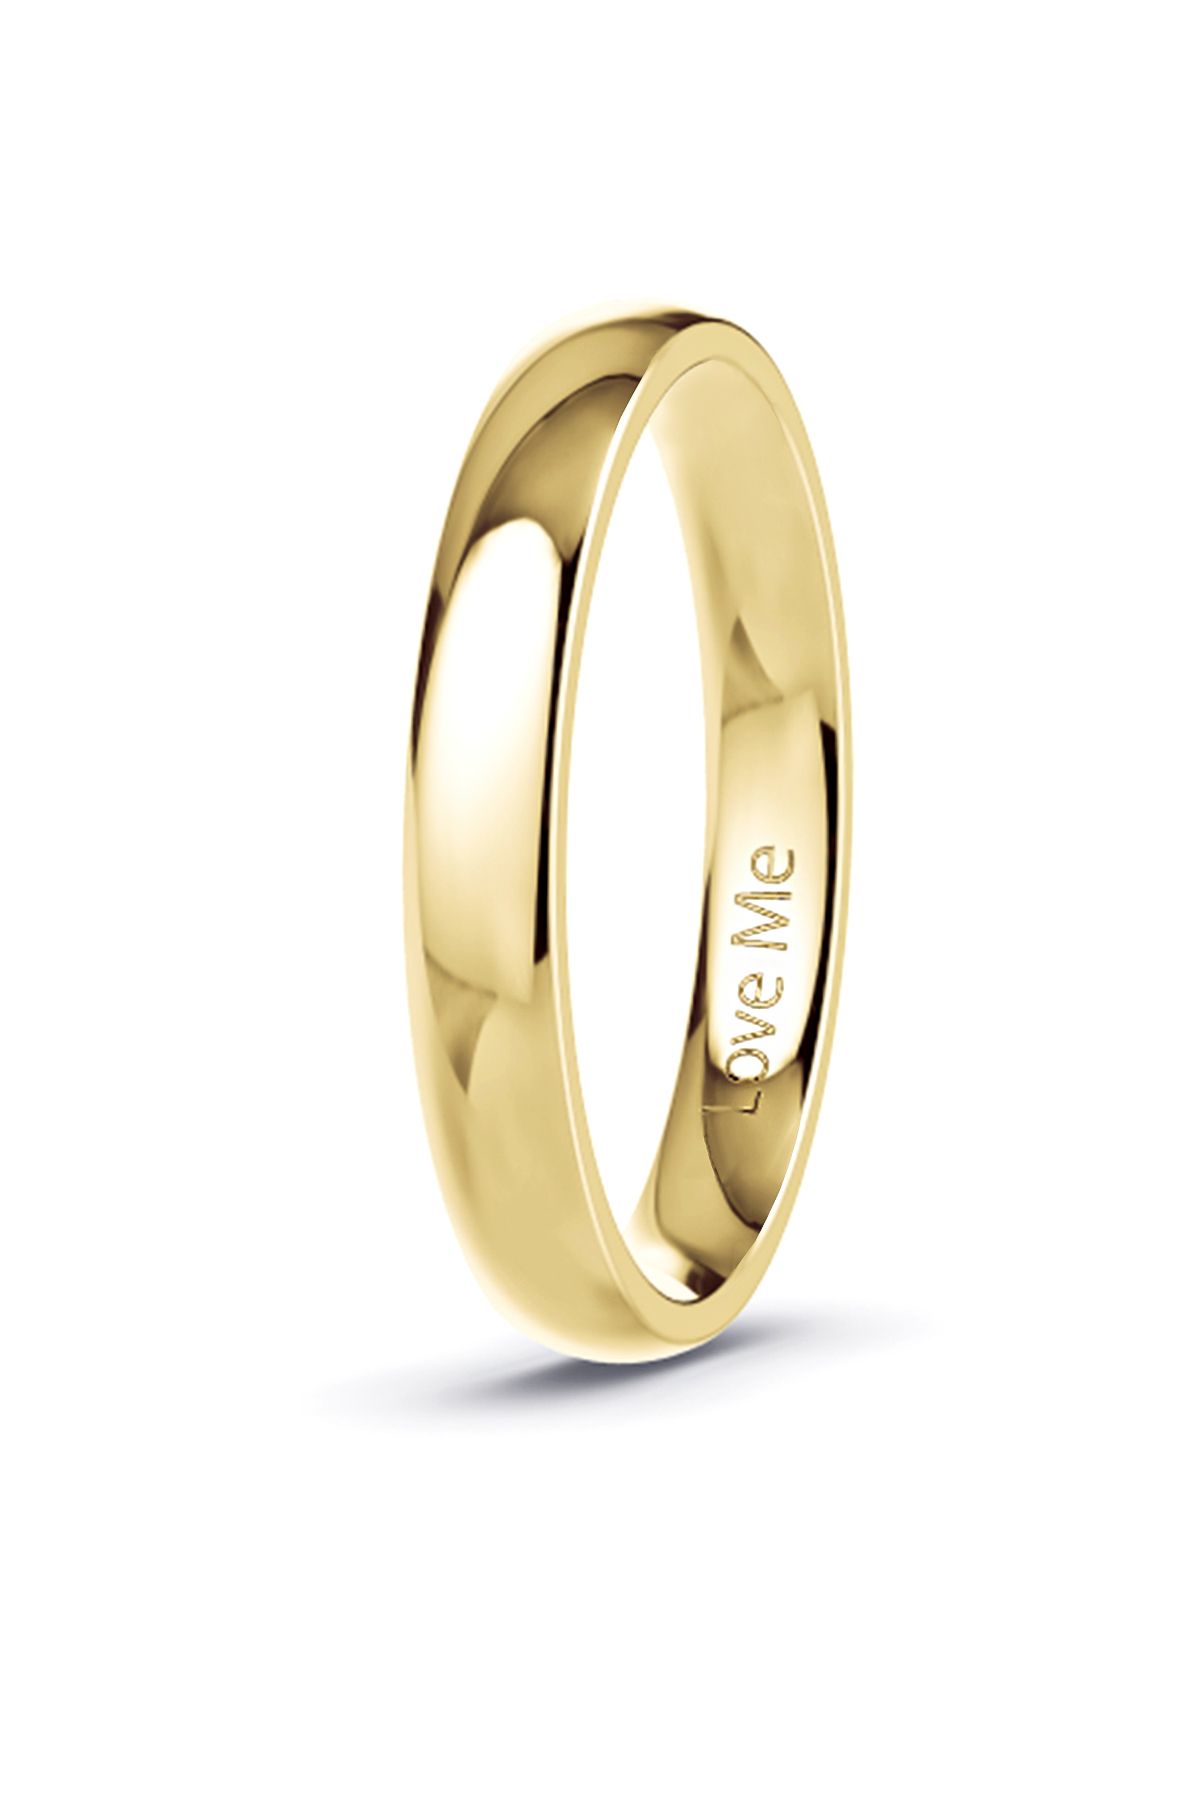 Love Me Marka Patentli Garantili Yeni Üretim Mücevher Kalitesinde 3mm Altın Renk Parlak Çelik Alyans Lm-332g